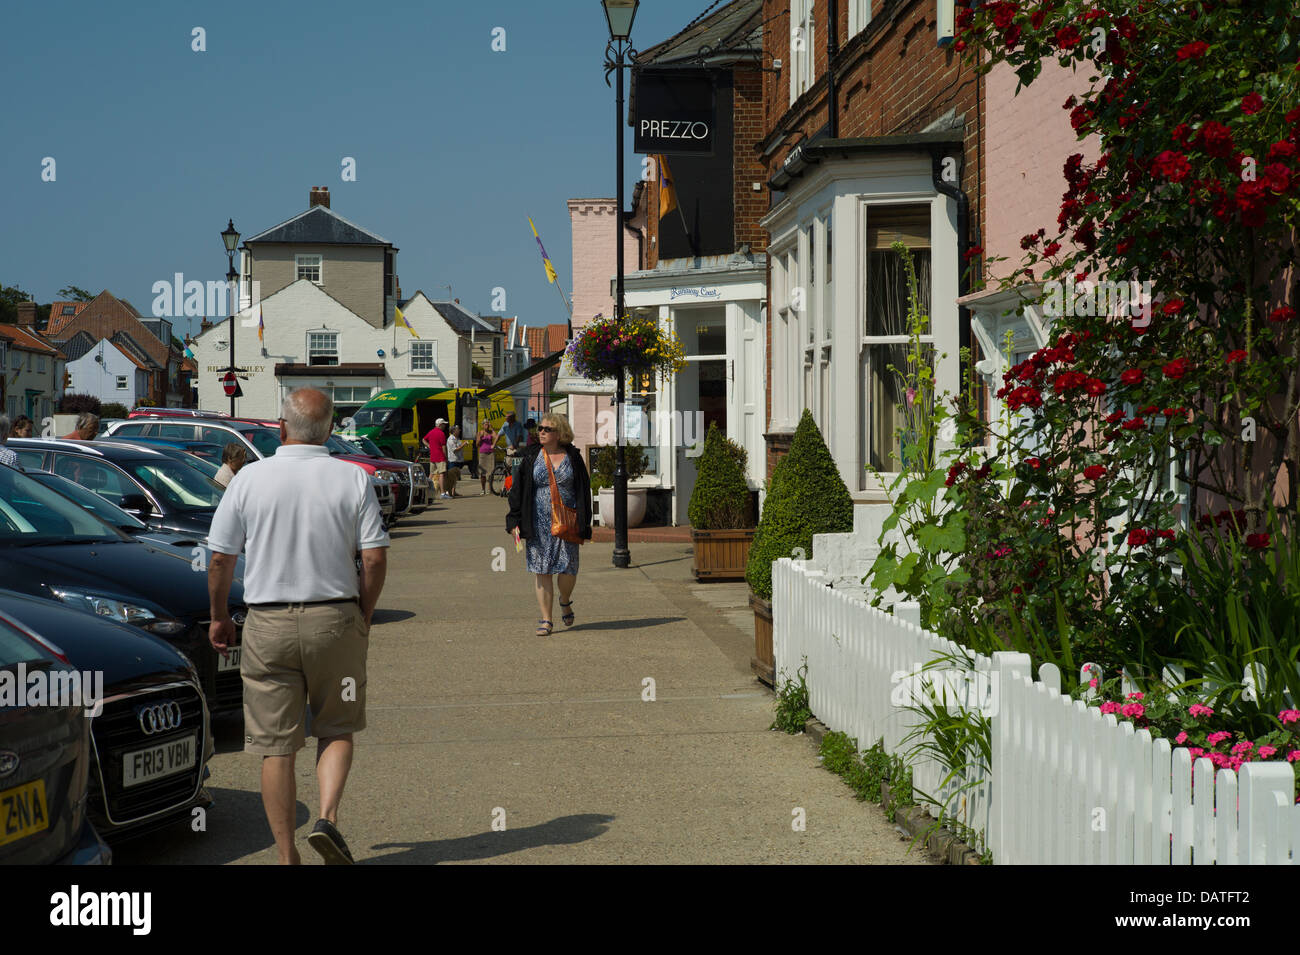 Aldeburgh, sur la côte du Suffolk attire les visiteurs de loin pour profiter de l'ancien charme anglais de cette belle ville côtière. Banque D'Images